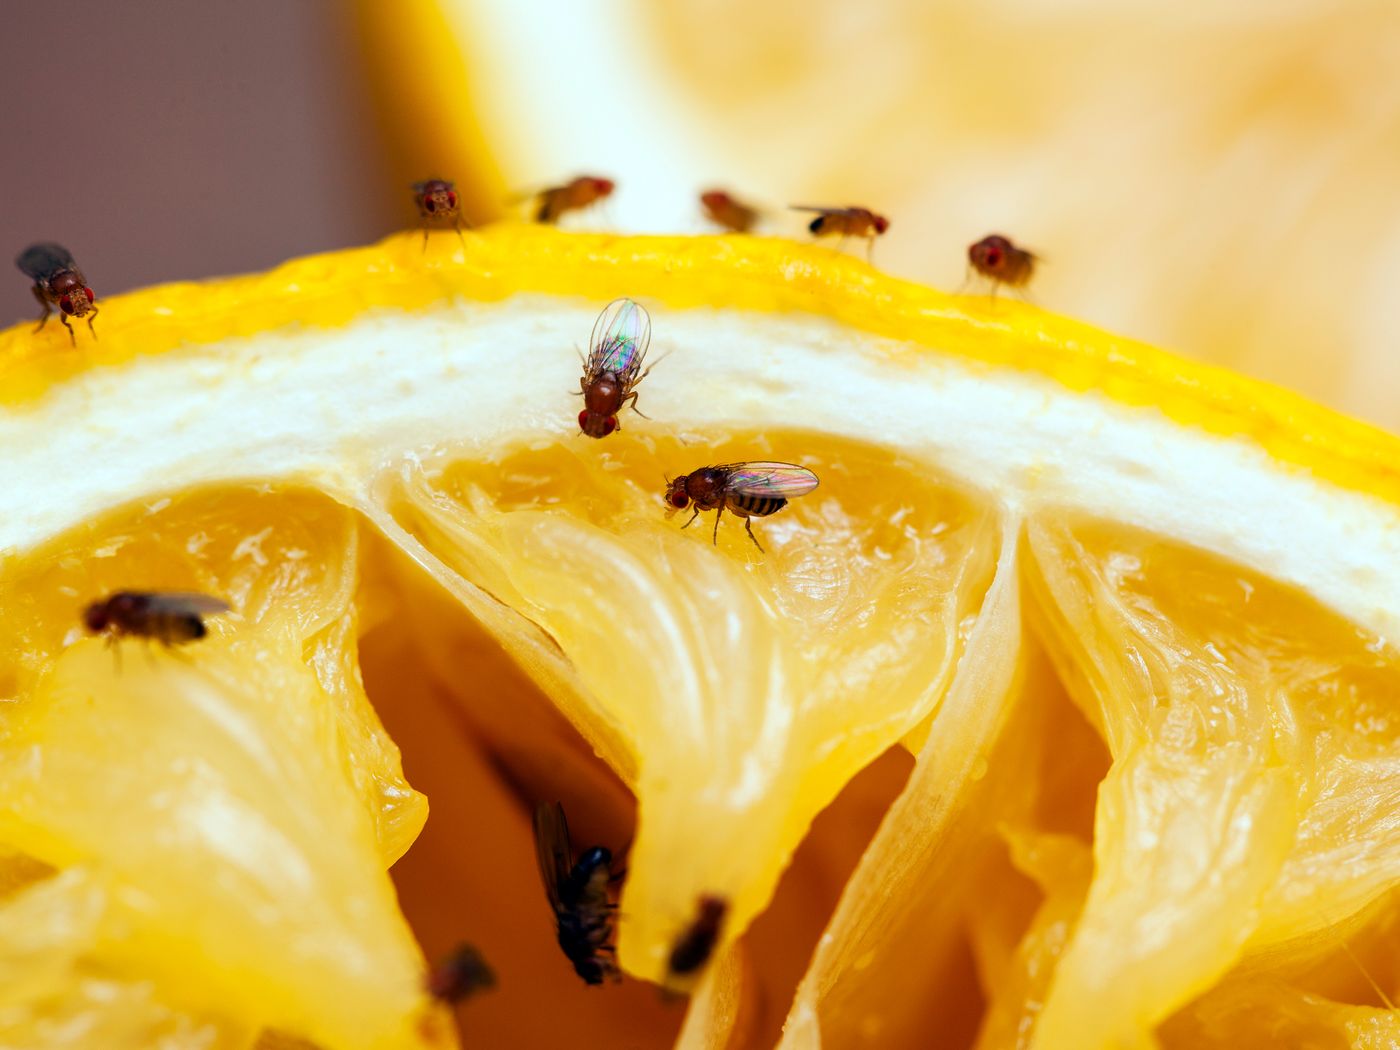 Truque simples com limão para acabar moscas irritantes em 30 minutos